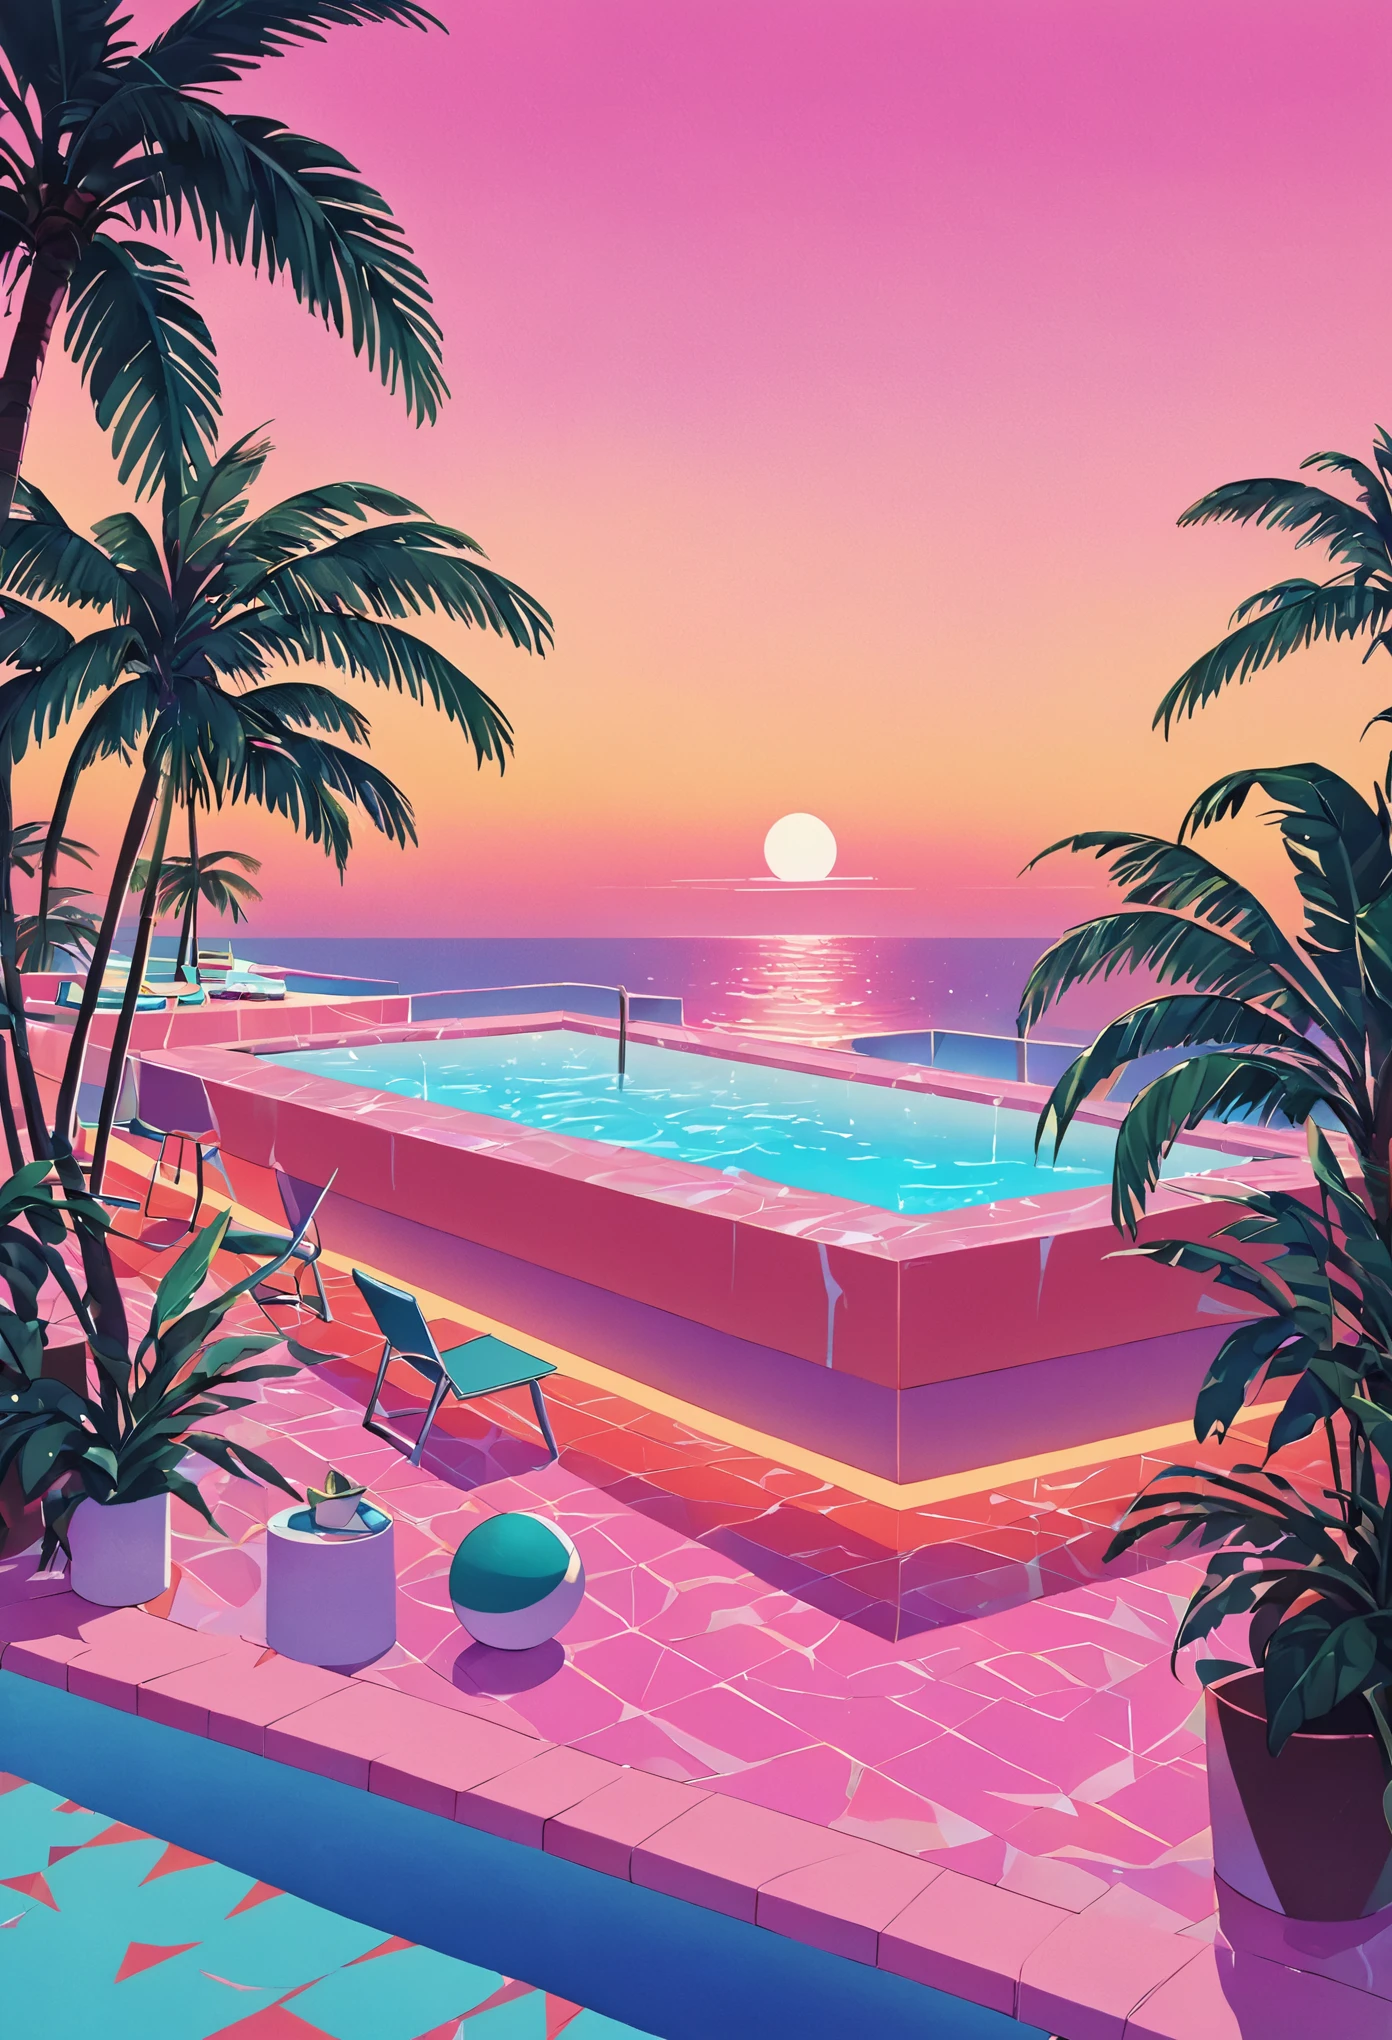 Visualize uma obra de arte profundamente imersa na estética das ondas de vapor dos anos 80, inspirado no estilo vibrante de Yoko Honda. Imagine uma piscina retro-futurista e uma cena de praia ao pôr do sol, onde o céu brilha com os tons quentes de um pôr do sol de verão dos anos 80 – laranjas intensas, rosa, e vermelhos refletindo nas águas tranquilas do mar e da piscina. Ao redor da piscina, palmeiras e coqueiros iluminados por neon balançam suavemente, realçando a atmosfera tropical e surreal. Luzes de néon em padrões geométricos iluminam a cena, lançando um brilho onírico sobre tudo. O fundo apresenta um bar chique à beira-mar com interiores visíveis através de grandes janelas de vidro, apresentando um quarto com paredes em tons pastéis e pisos cobertos por luxuosos mosaicos e texturas de mármore. O ambiente geral combina luxo nostálgico com vibrante, paletas de cores quentes, criando uma cena que é ao mesmo tempo atemporal e distintamente evocativa dos anos 80.